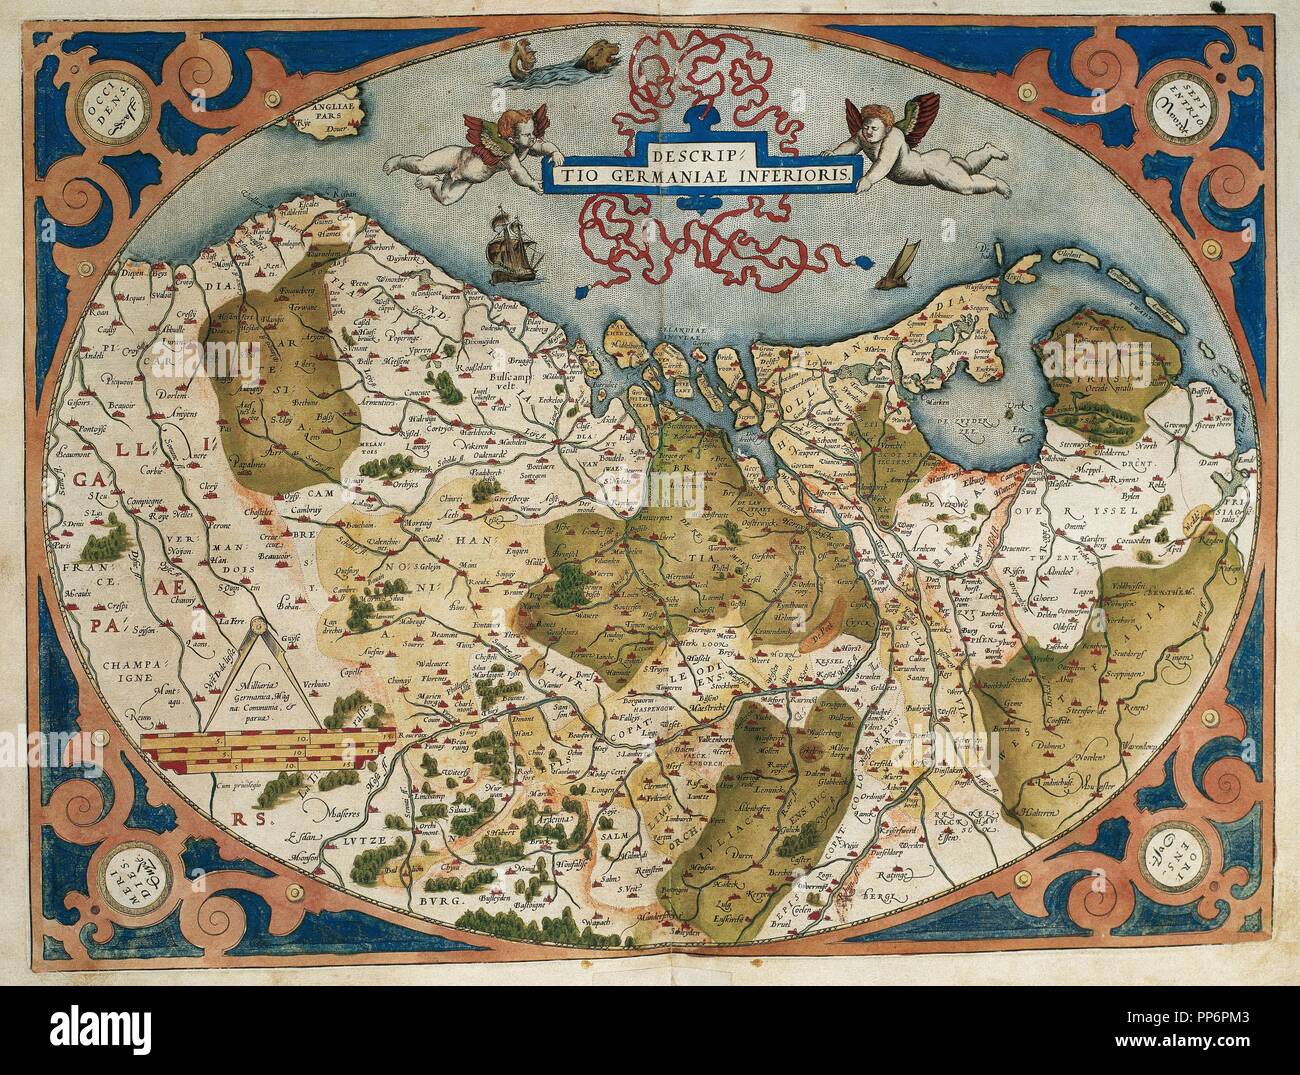 Karte von Deutschland und Niederlande. Theatrum Orbis Terrarum von Abraham Ortelius (1527-1598). Erste Ausgabe. Antwerpen, 1574. Bibliothek von Katalonien. Barcelona. Spanien. Stockfoto